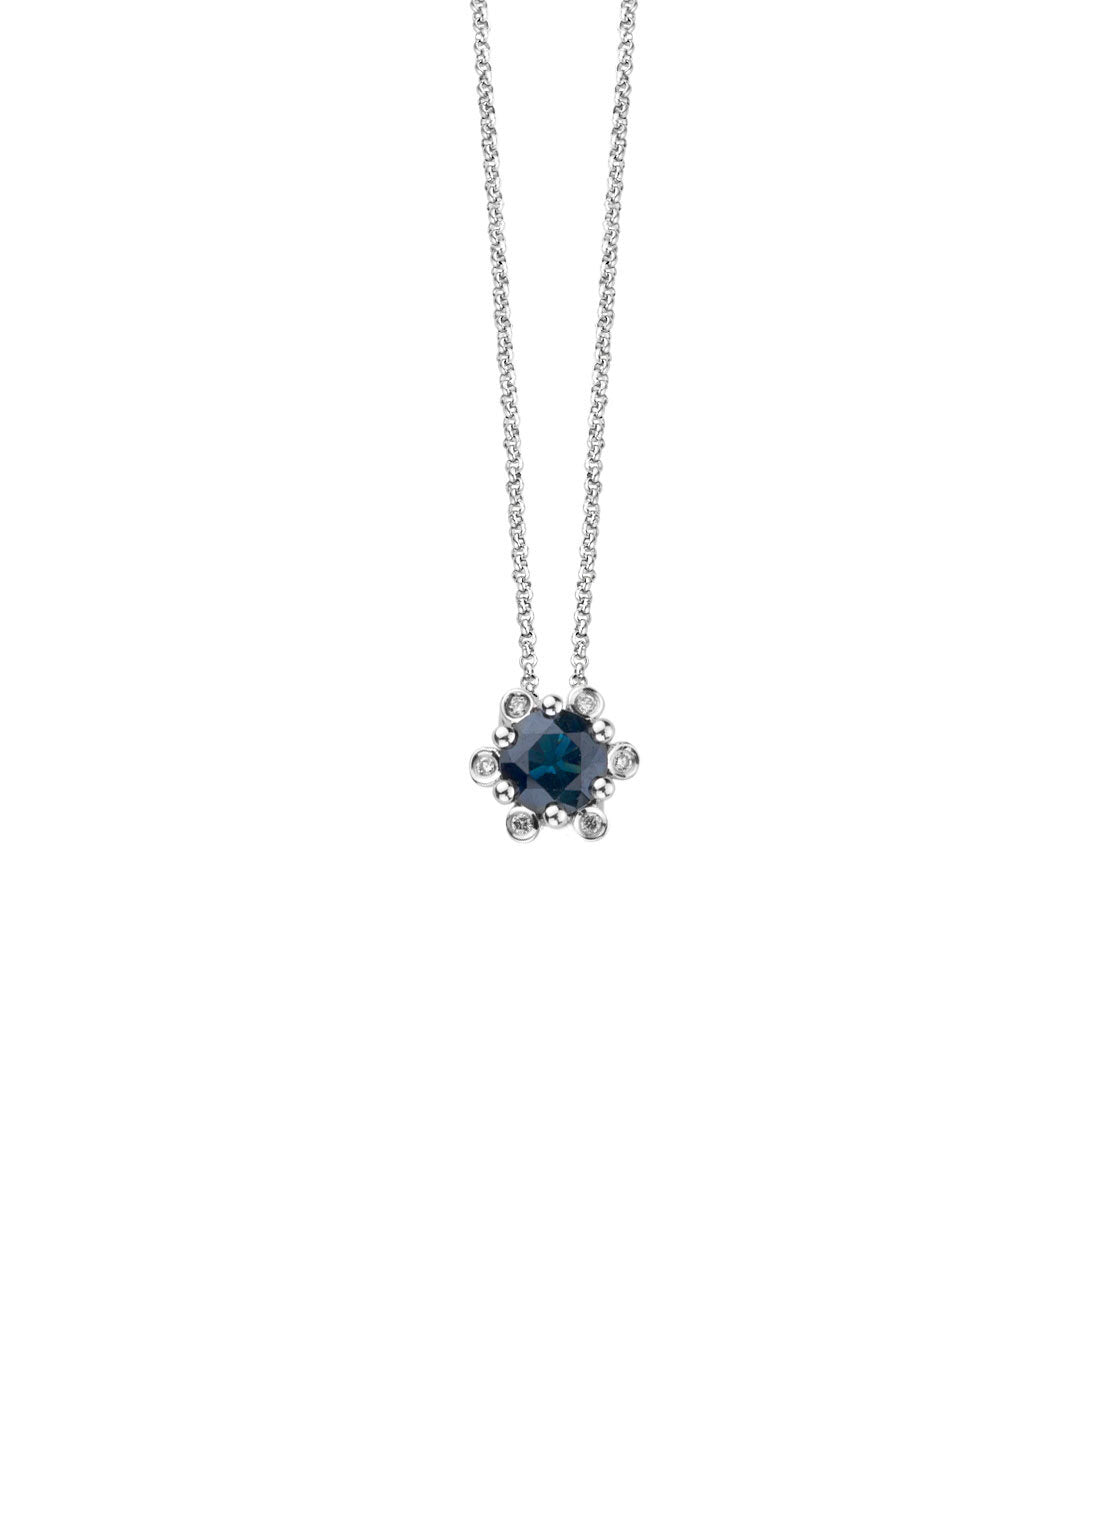 White gold pendant, 0.47 CT Blue Saffier, Empress